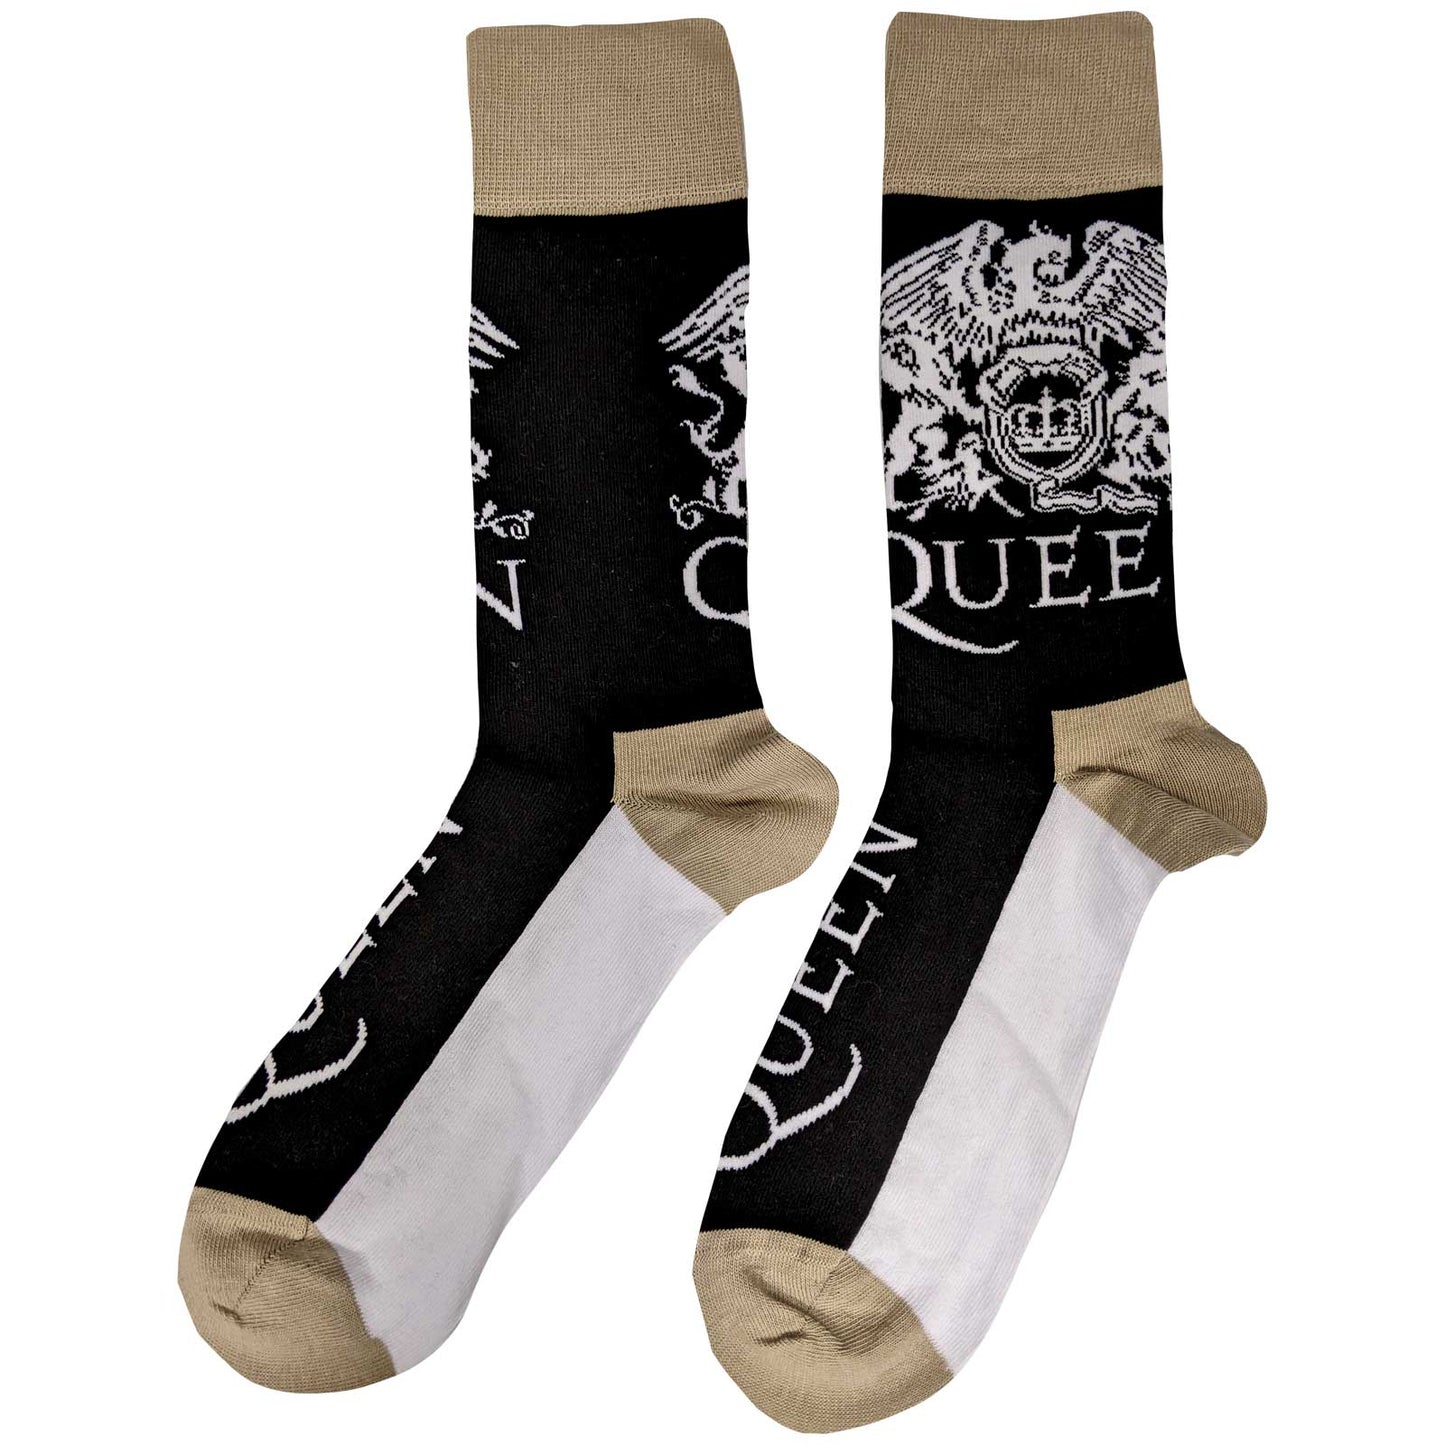 QUEEN - Crest & Logo Socks (7 - 11)